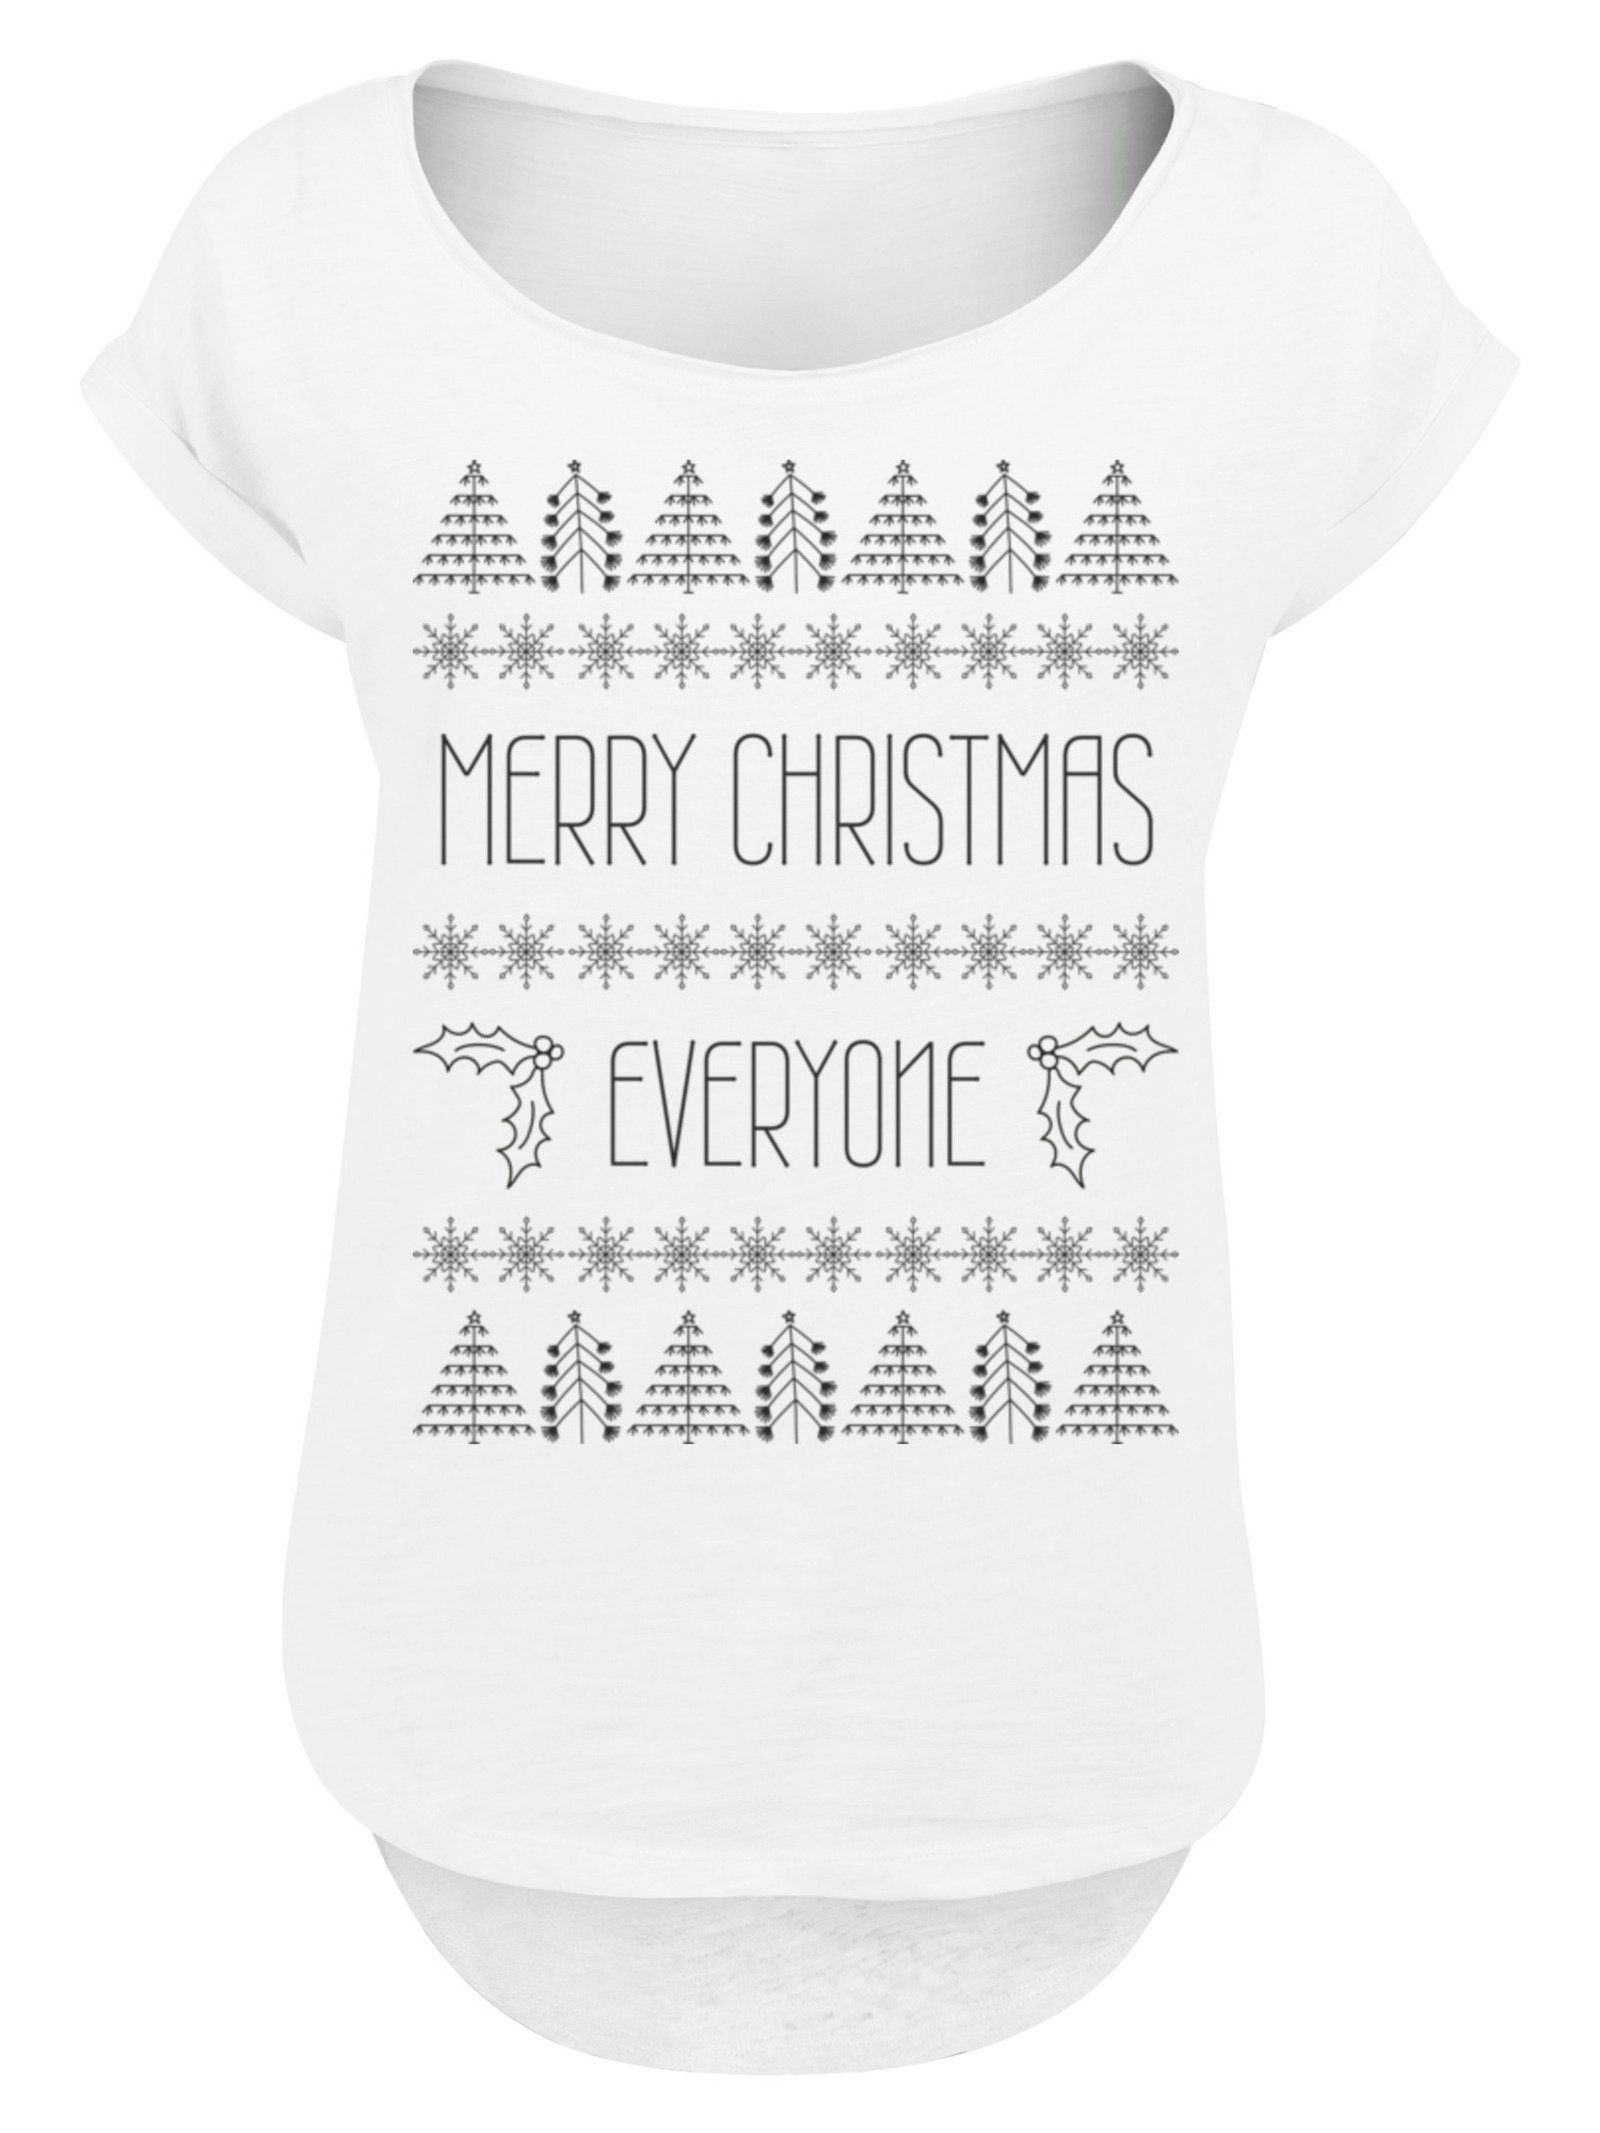 lang Hinten T-Shirt Damen Print, geschnittenes Christmas T-Shirt Merry F4NT4STIC Everyone extra Weihnachten